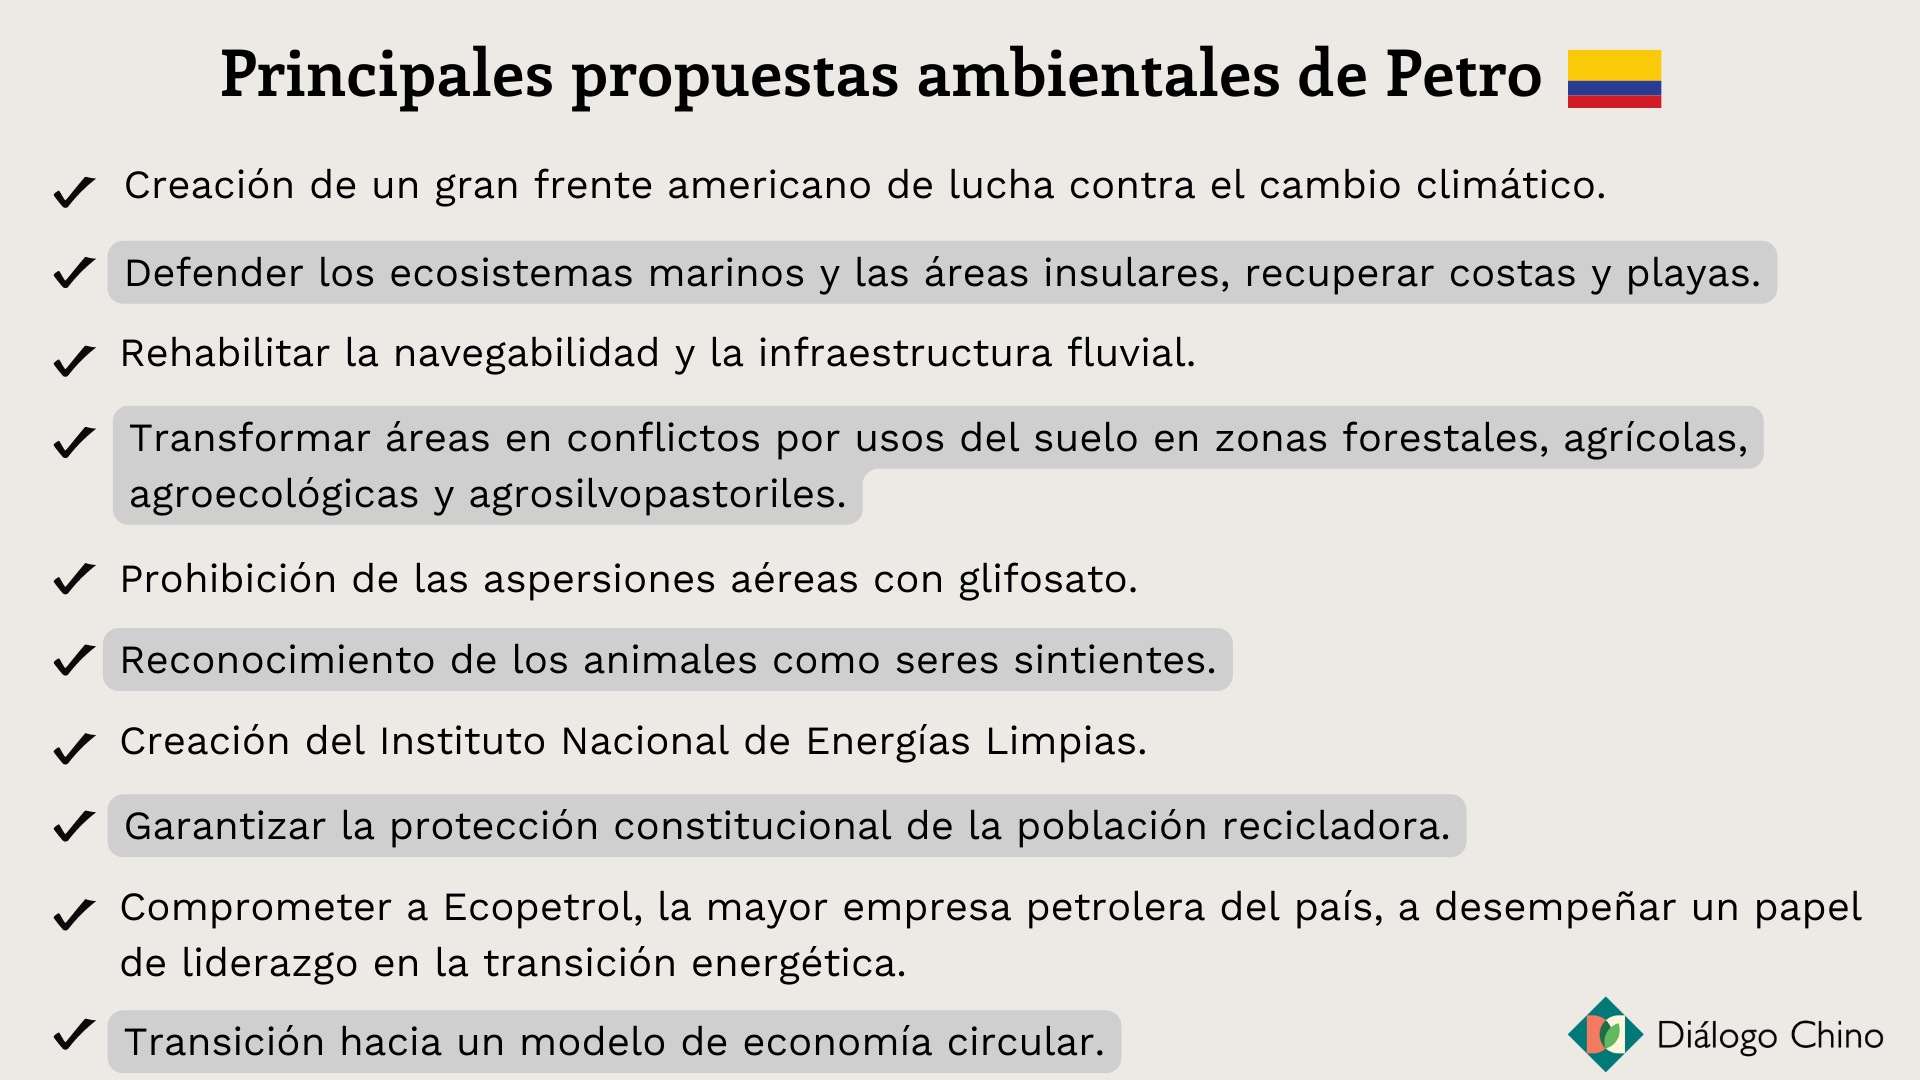 lista de propuesta ambientales de Petro en Colombia